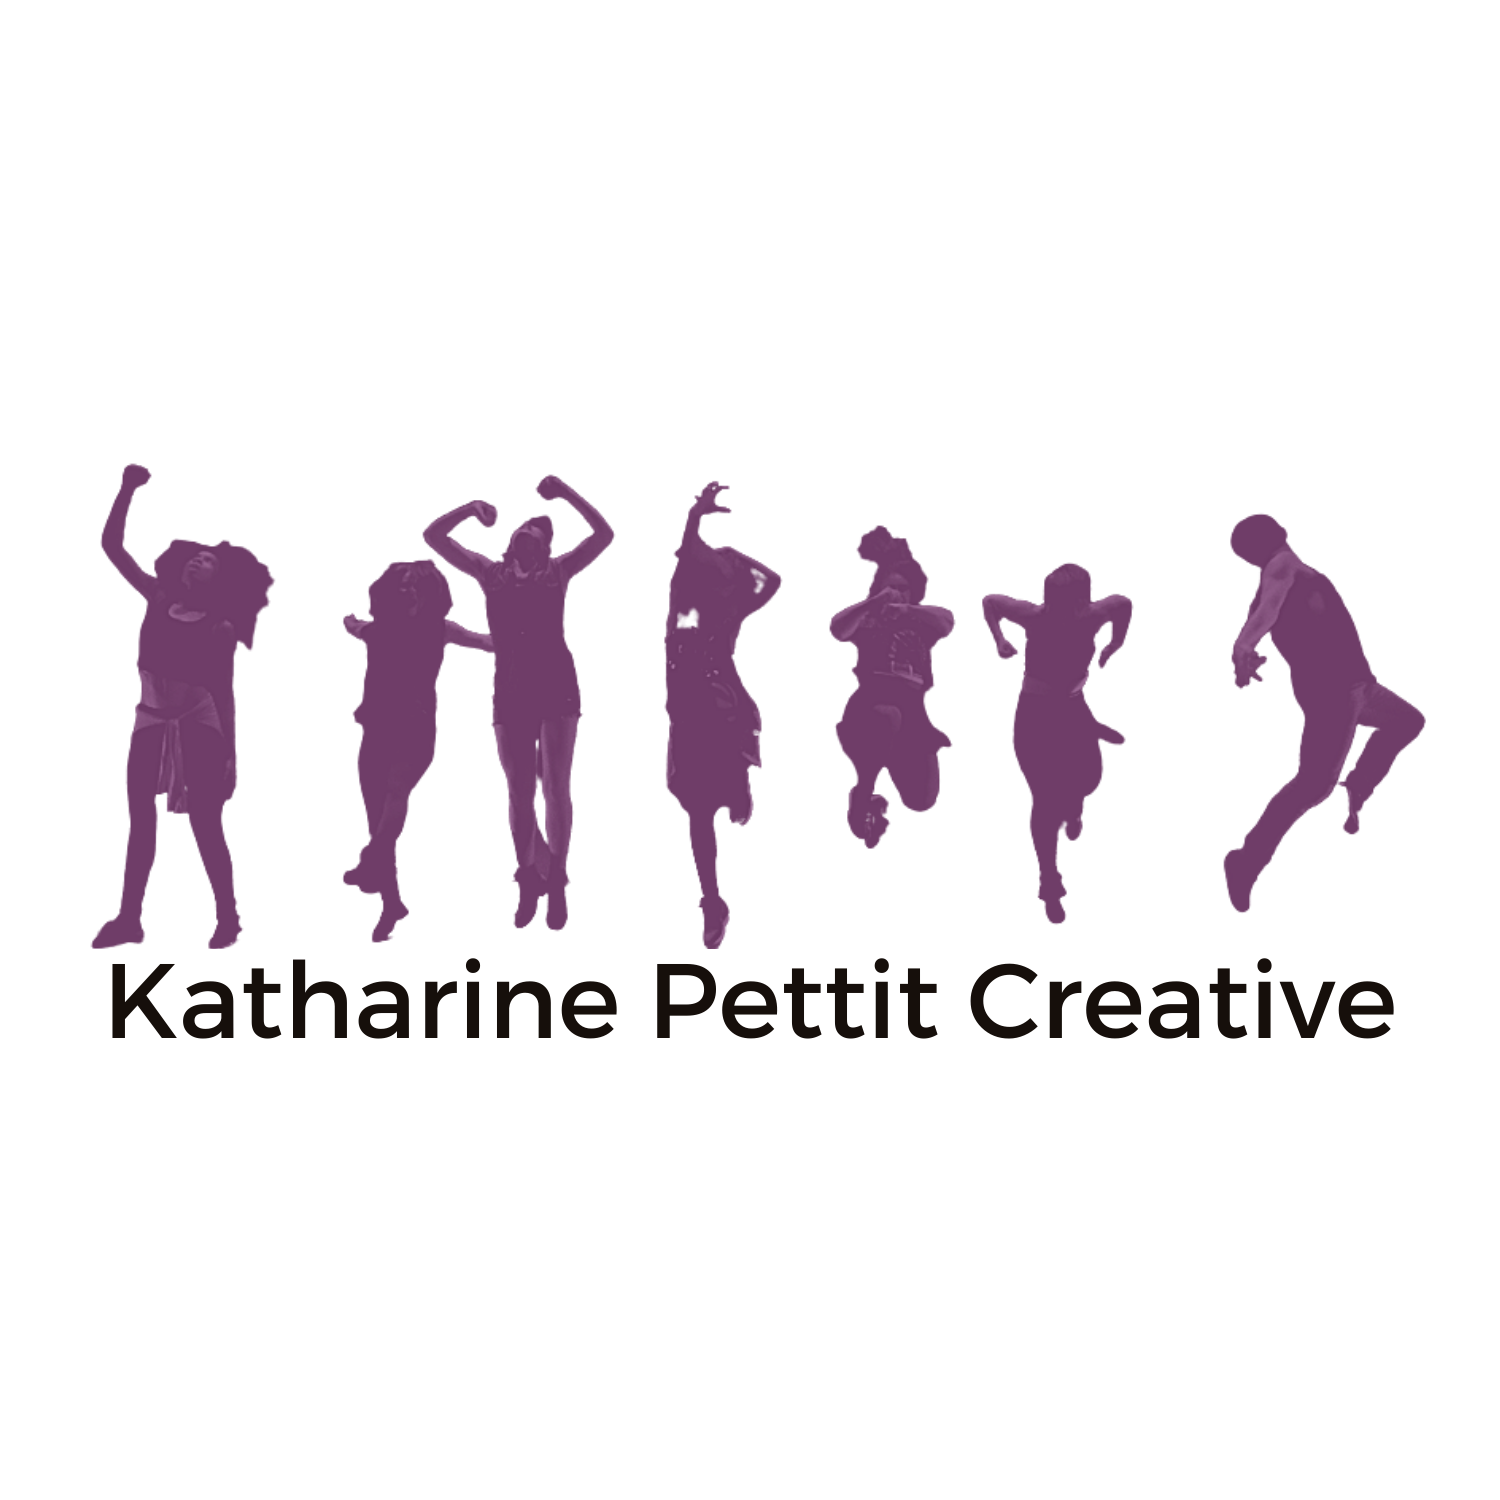 Katharine pettit creative   kpc logo